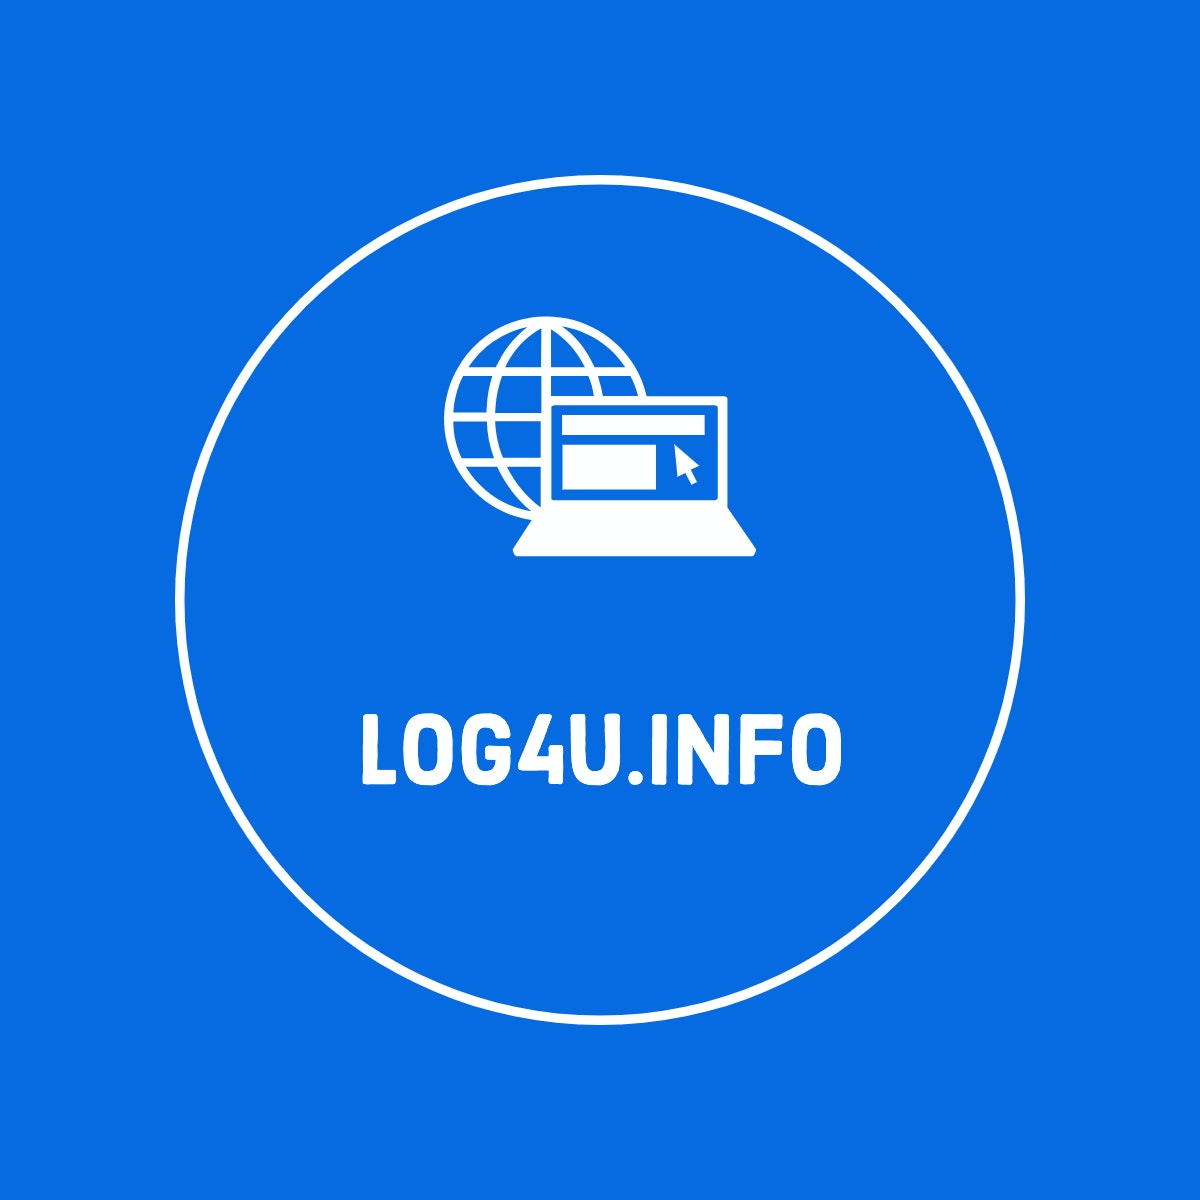 Log4U.info logo